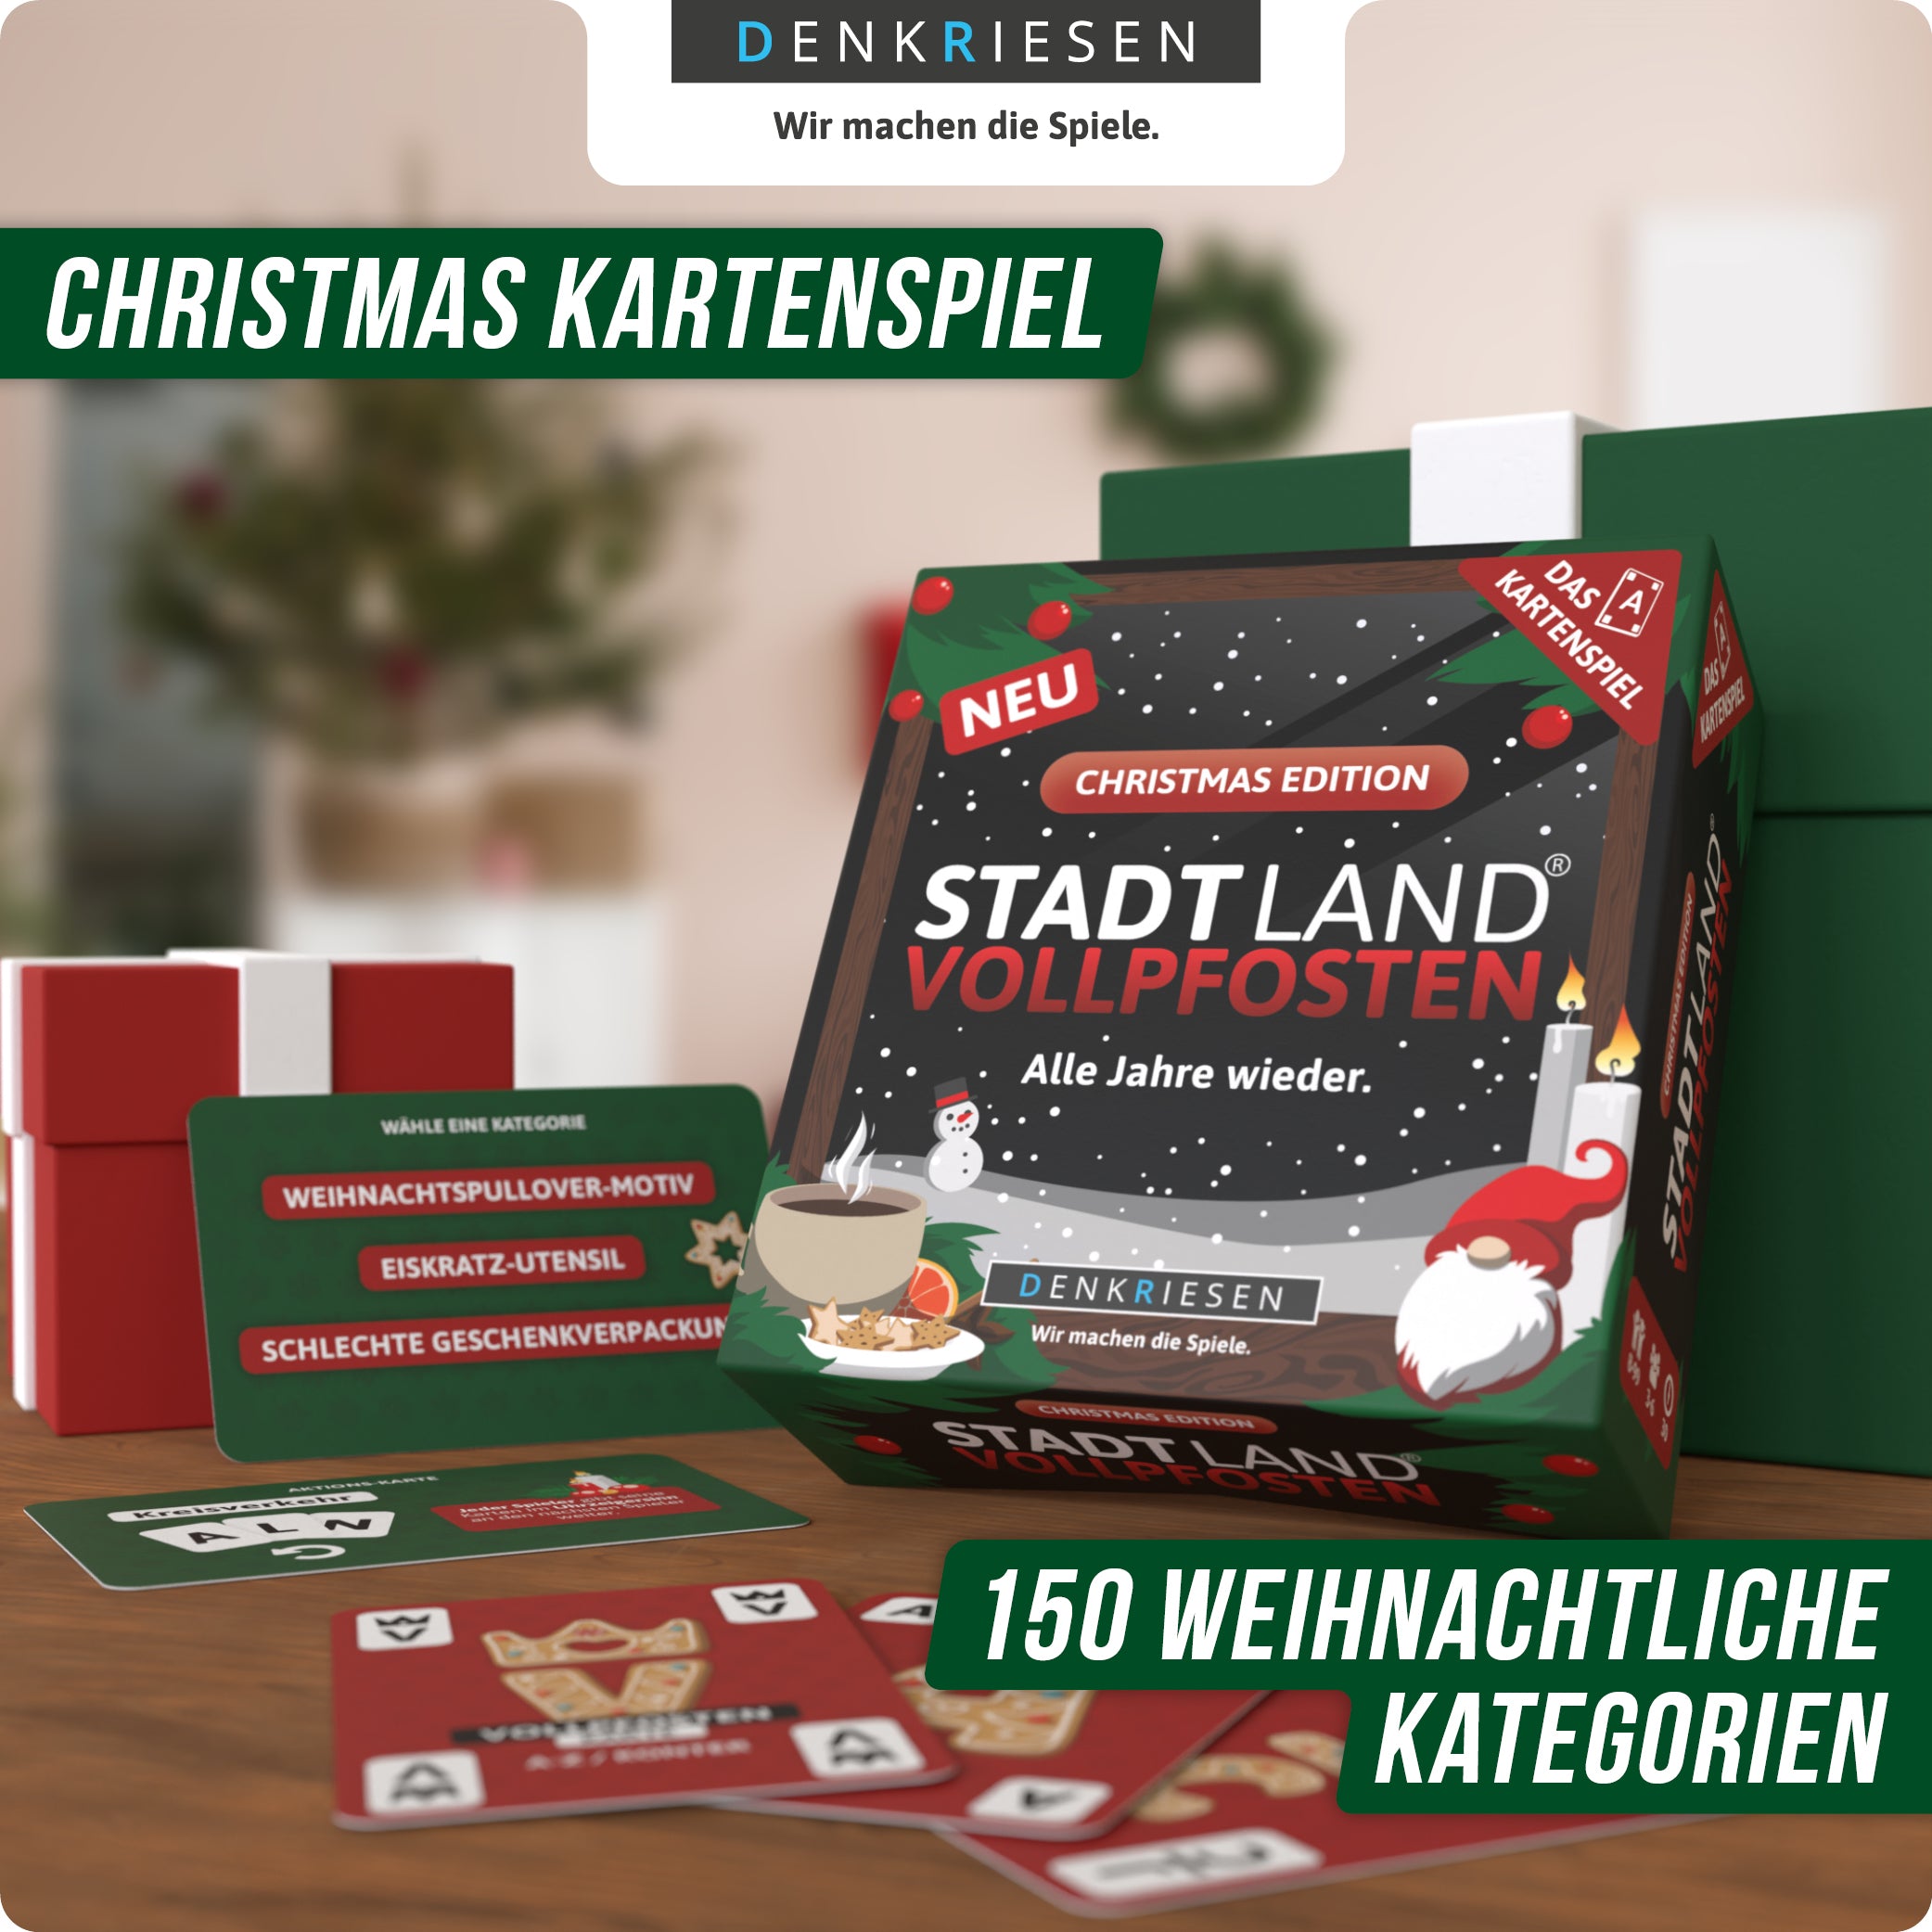 Spar-Set Santa Klaus - STADT LAND VOLLPFOSTEN® - Christmas Edition A3 + SLV Karten Christmas Edition + HANGMAN® - Christmas Edition